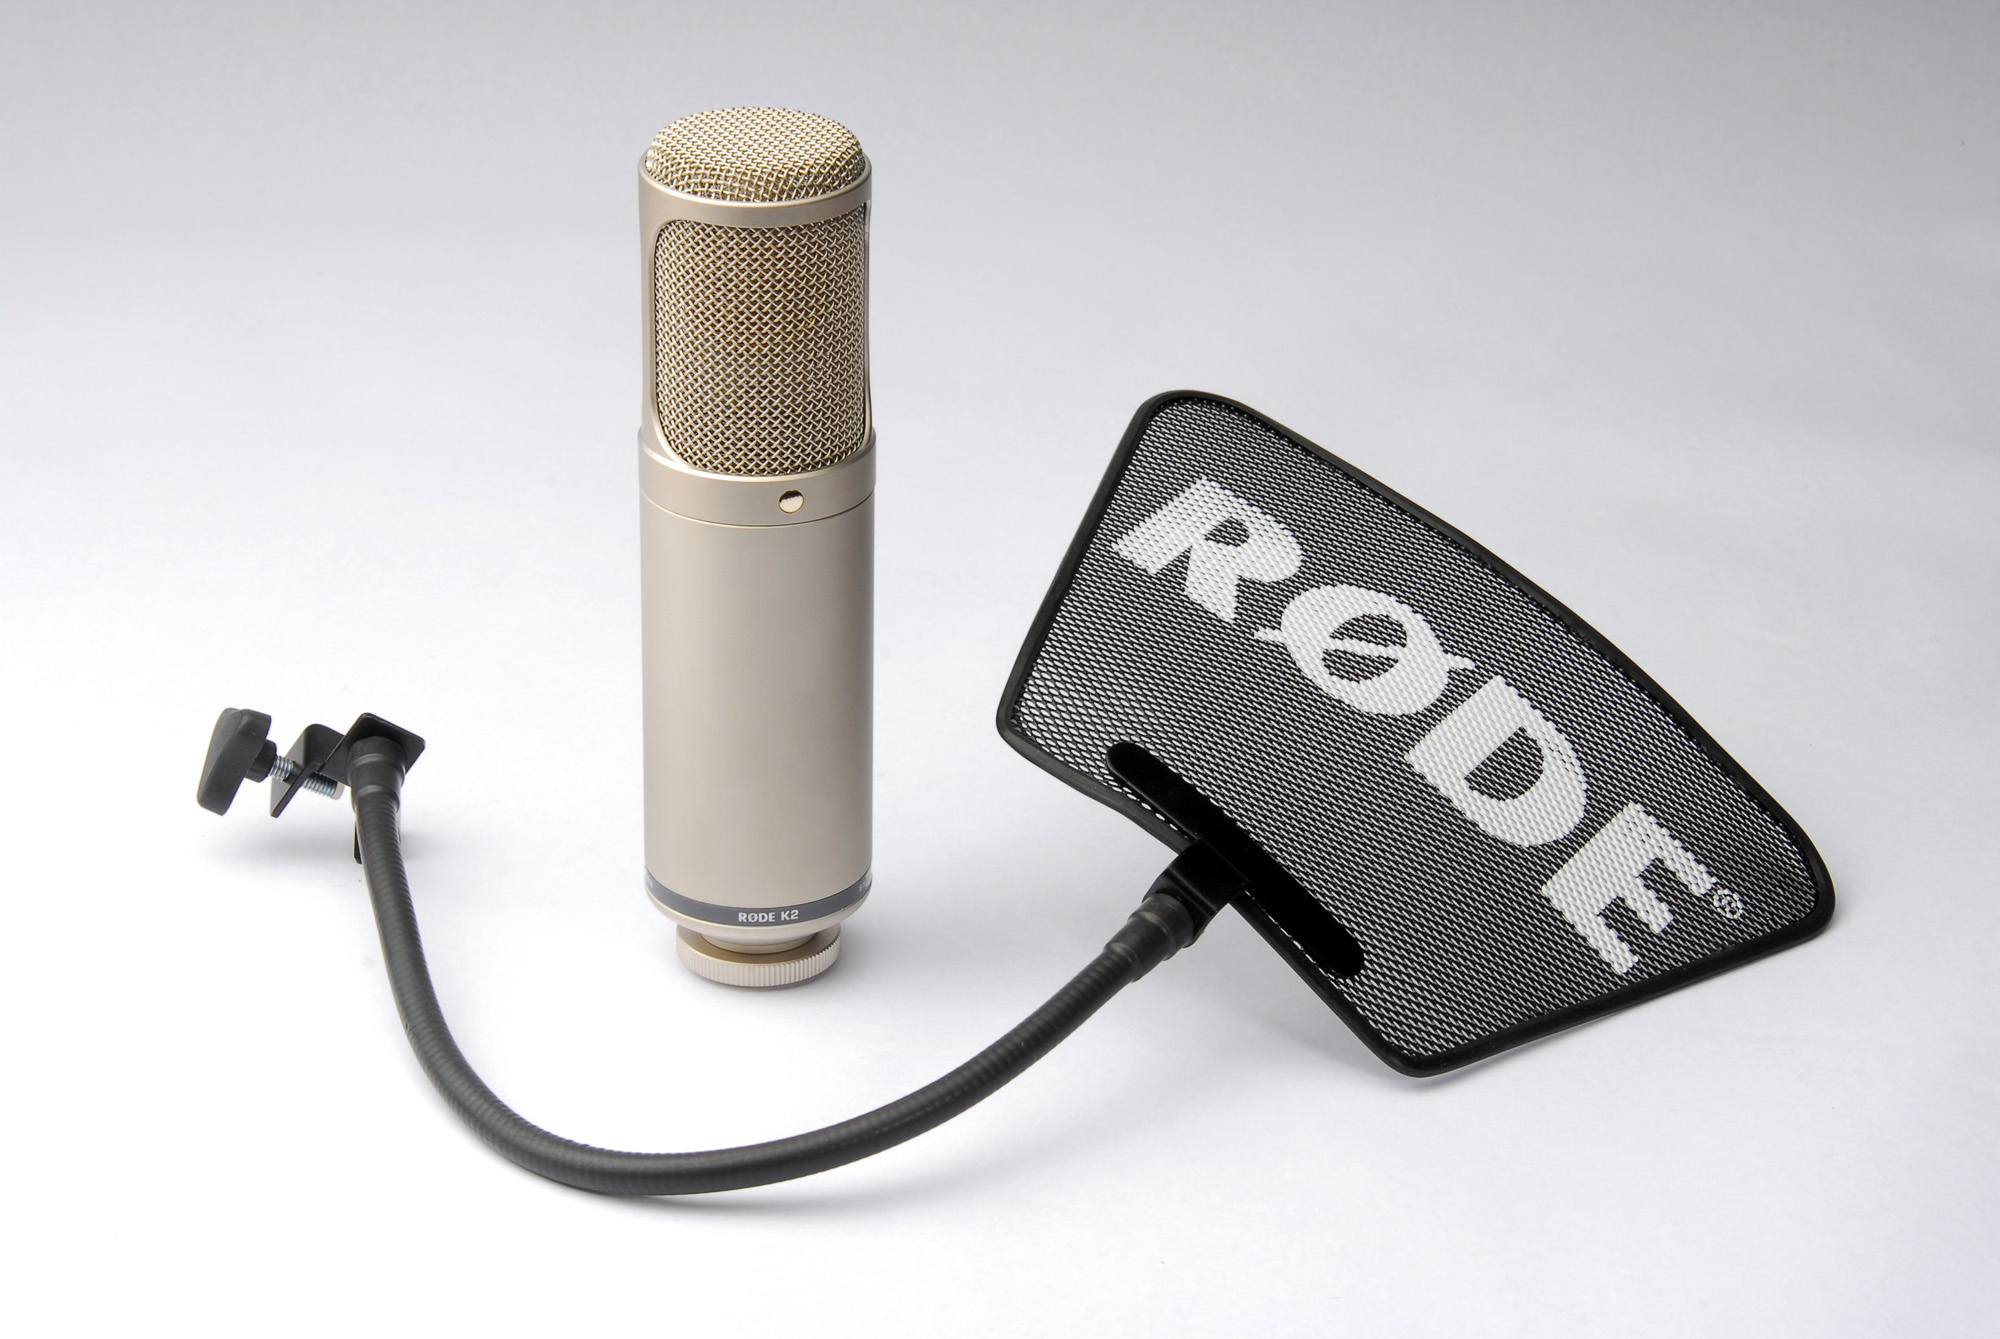 K2, Valve Condenser Microphone